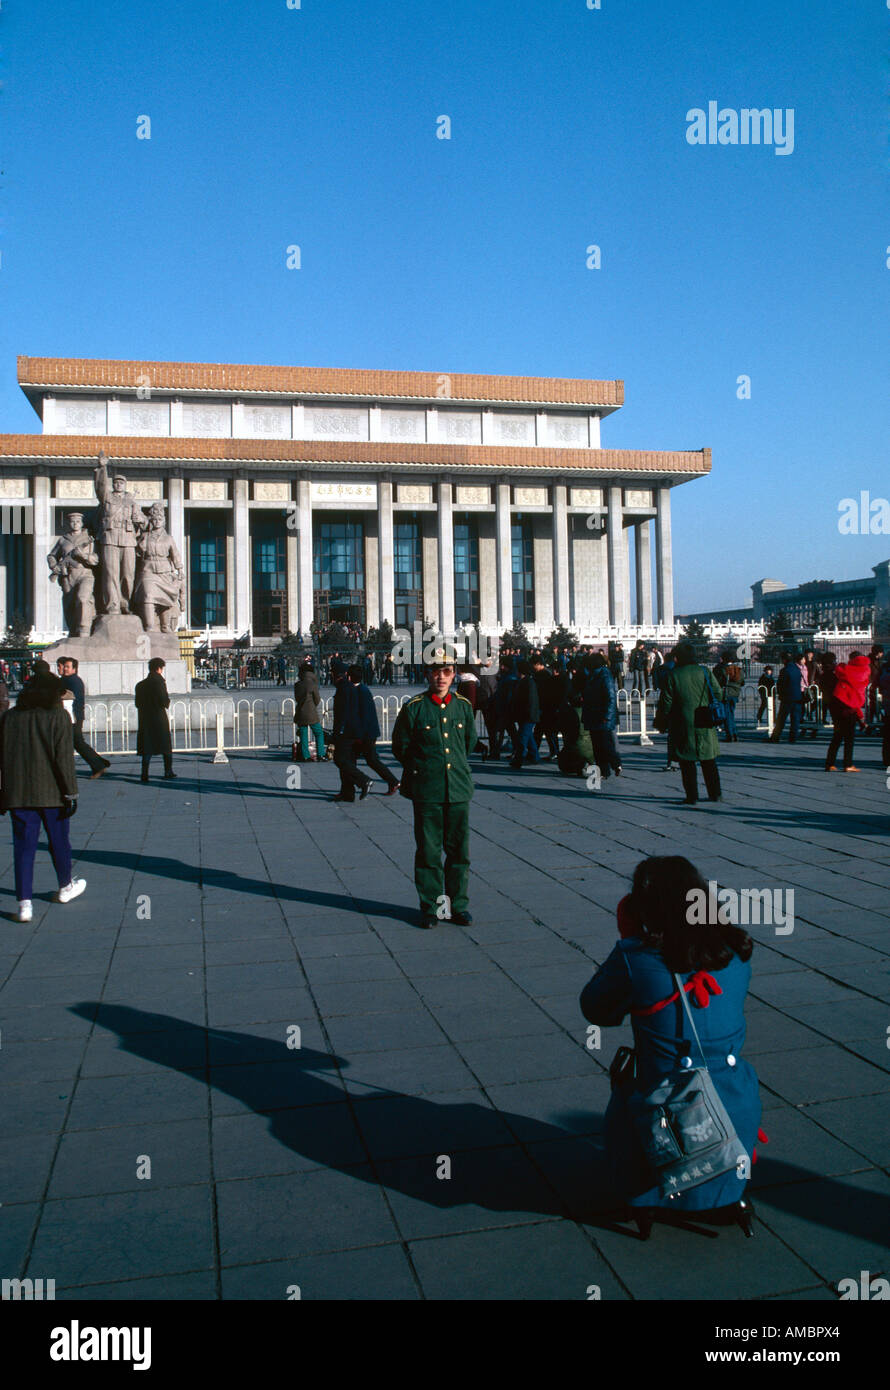 Soldat immer seine Photographie, Mausoleum von Mao Tse Tung, Platz des himmlischen Friedens, Peking, China Stockfoto